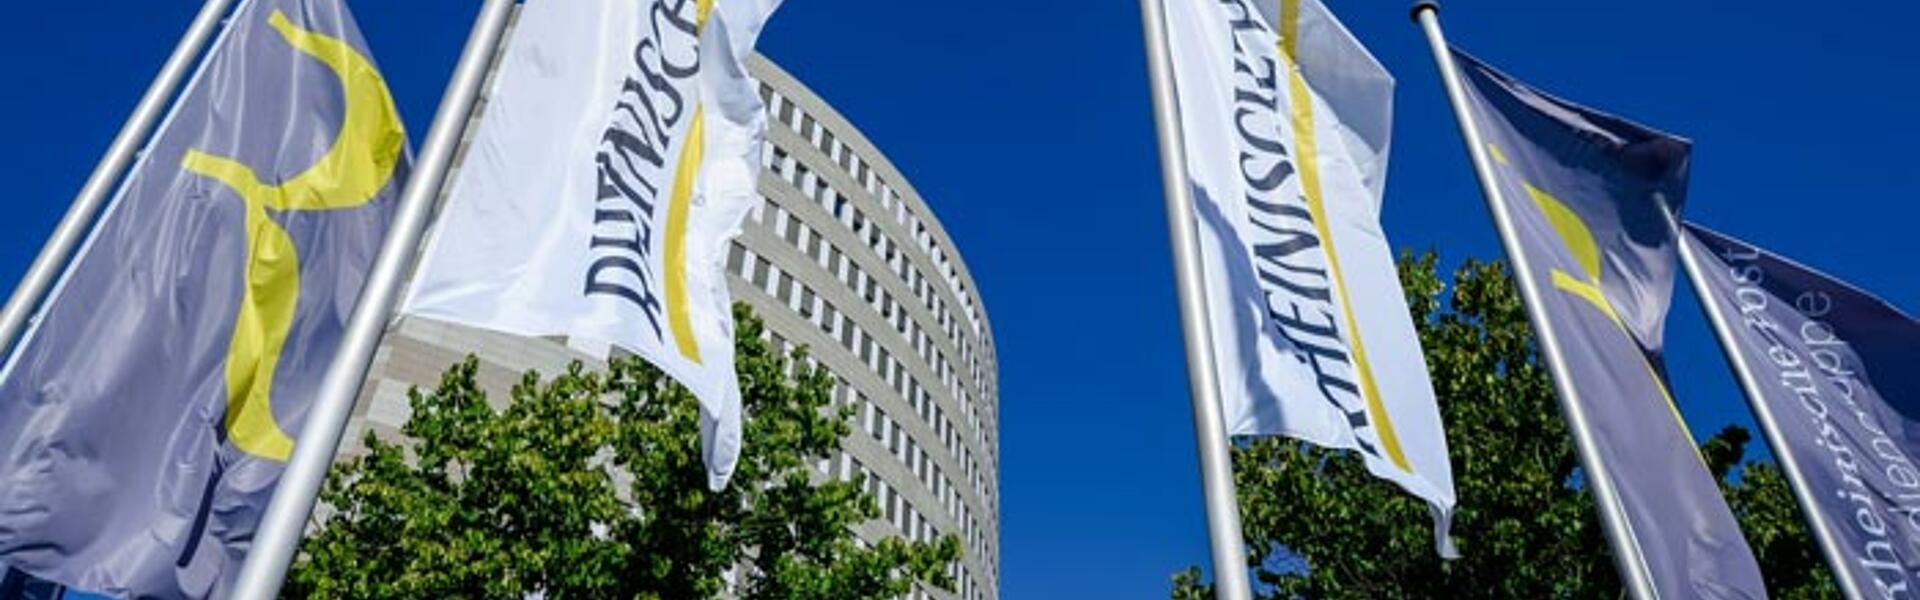 Success Story Bedarfsanforderungen Rheinische Post Firmengebaeude Flaggen